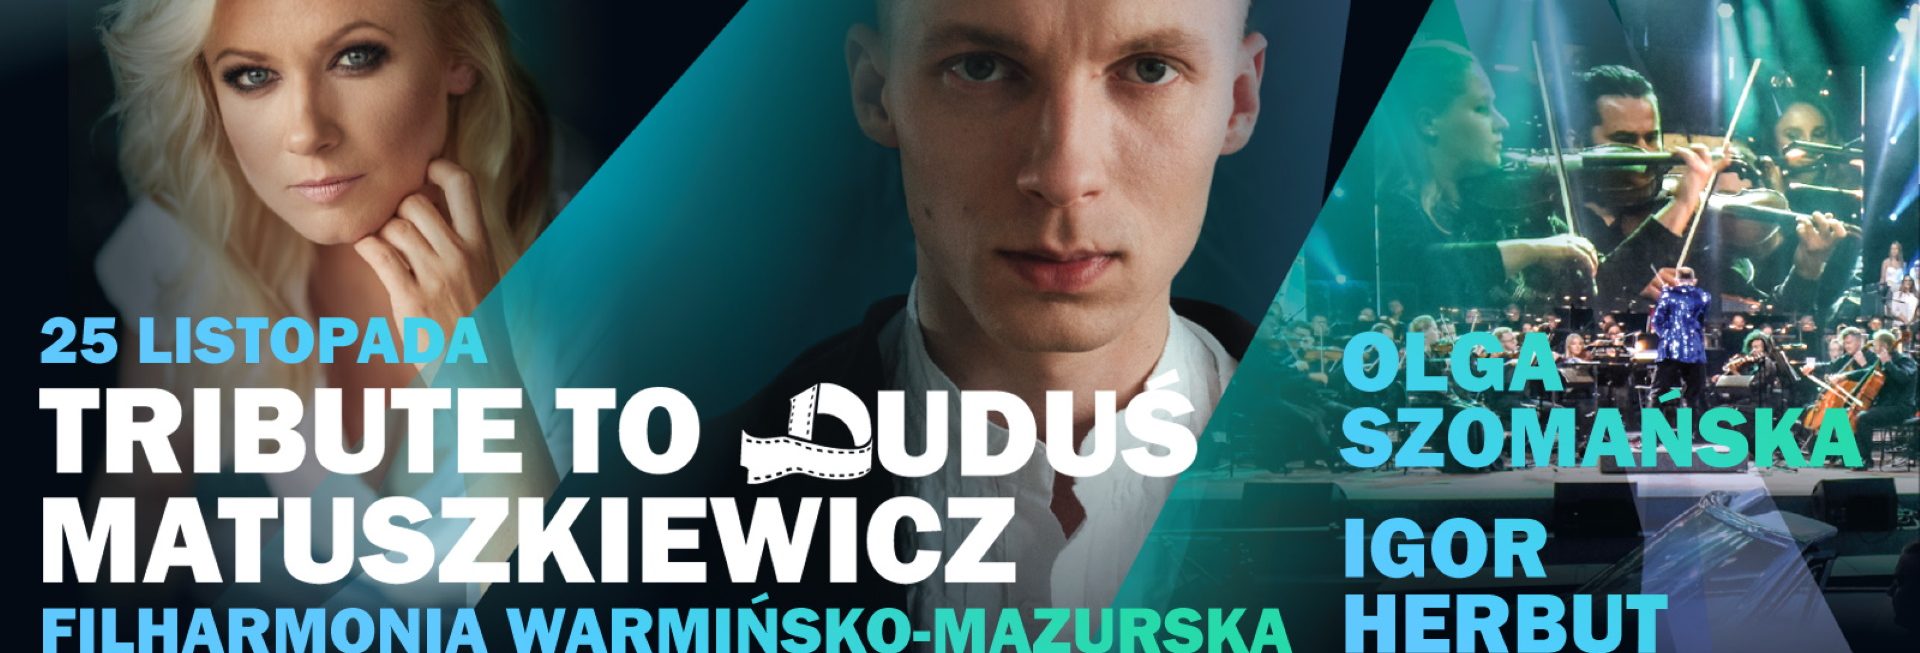 Plakat zapraszający do Olsztyna na koncert Tribute to Duduś Matuszkiewicz – Herbut, Szomańska Filharmonia Olsztyn 2022.